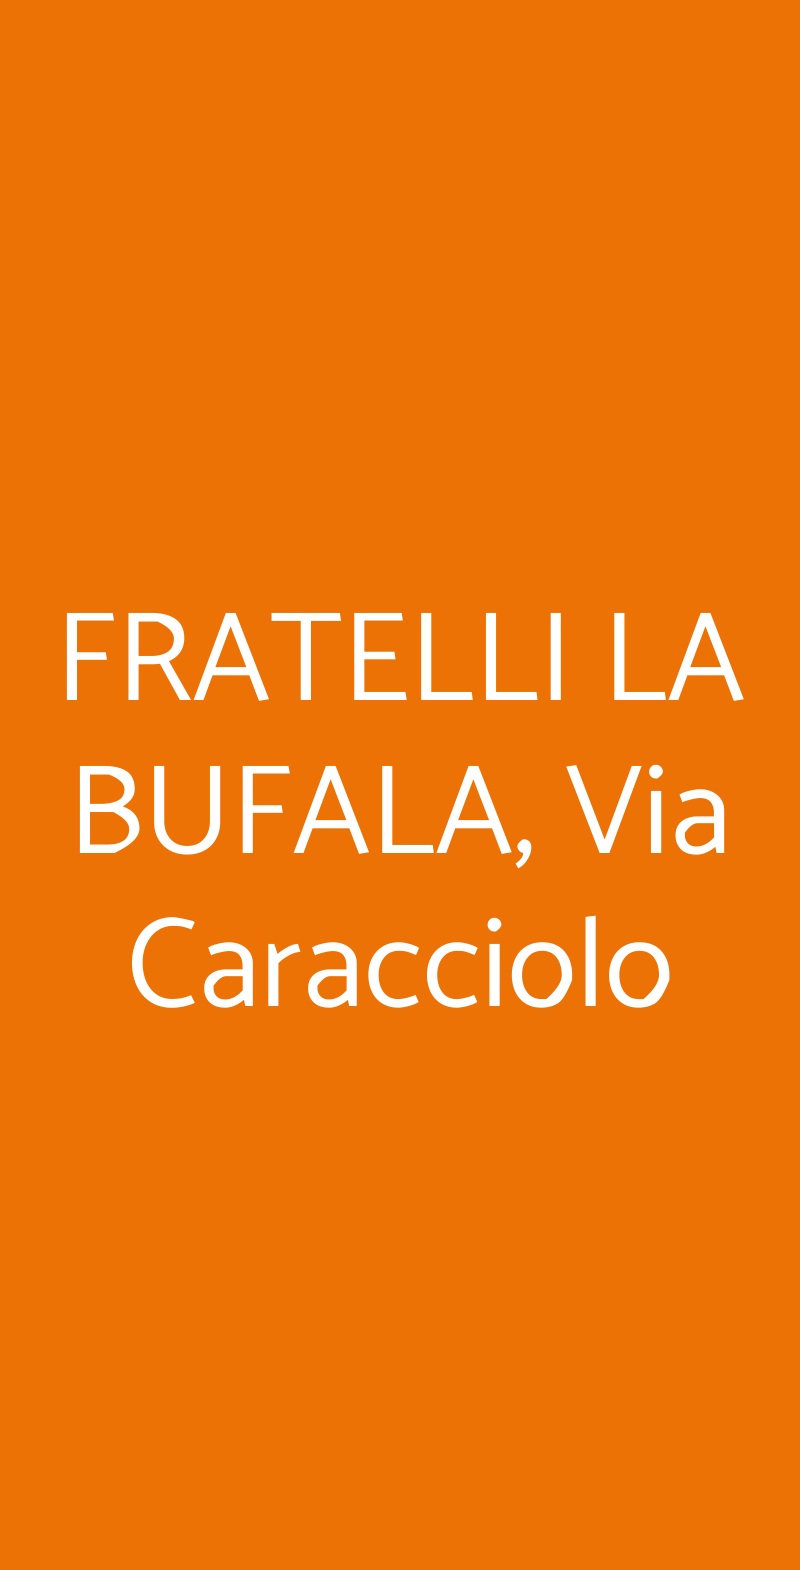 FRATELLI LA BUFALA, Via Caracciolo Napoli menù 1 pagina